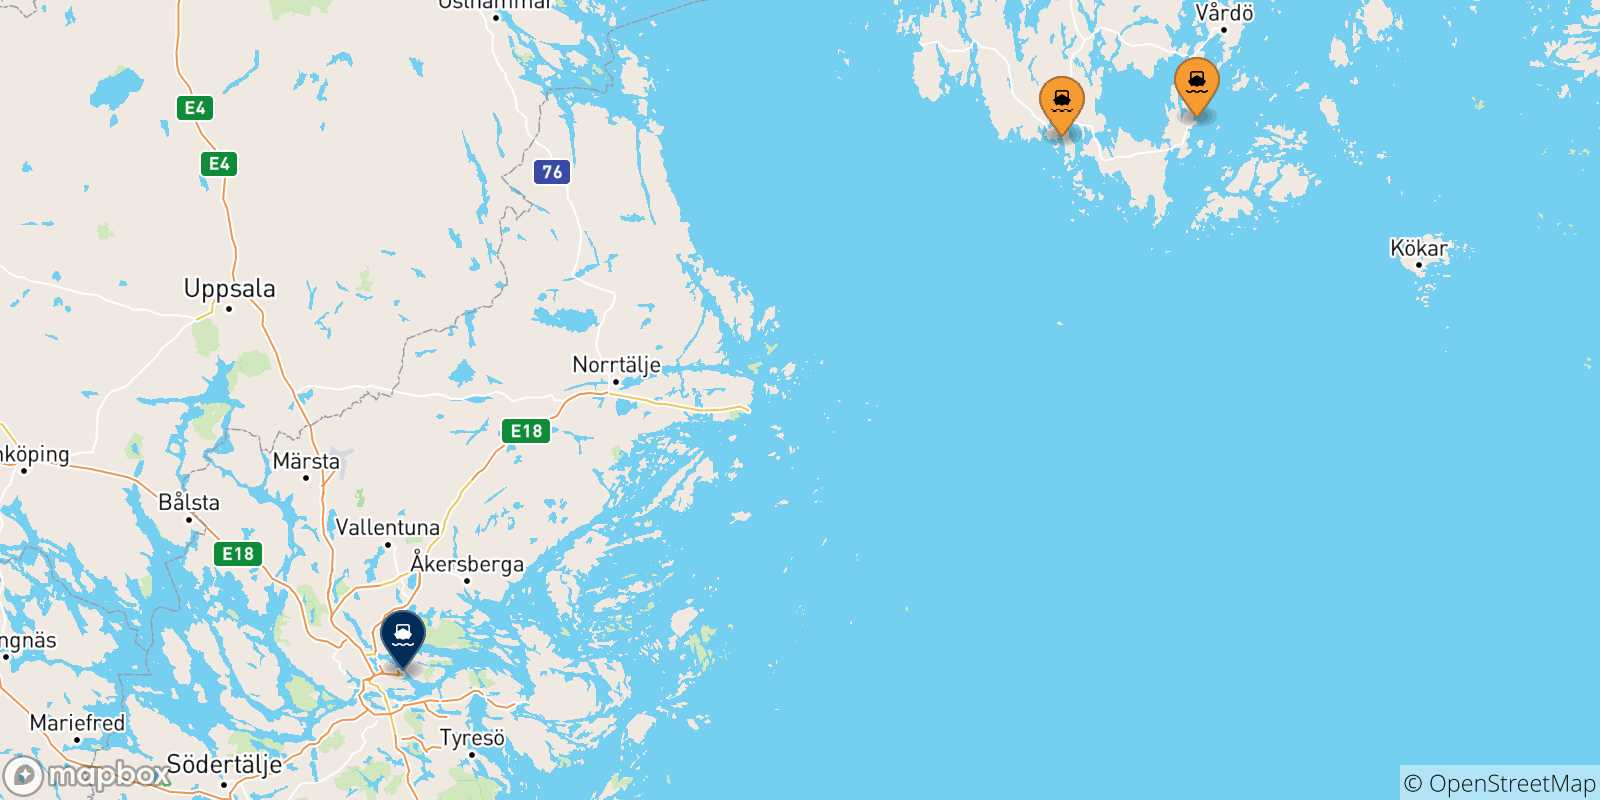 Mappa delle possibili rotte tra le Isole Aland e Stoccolma